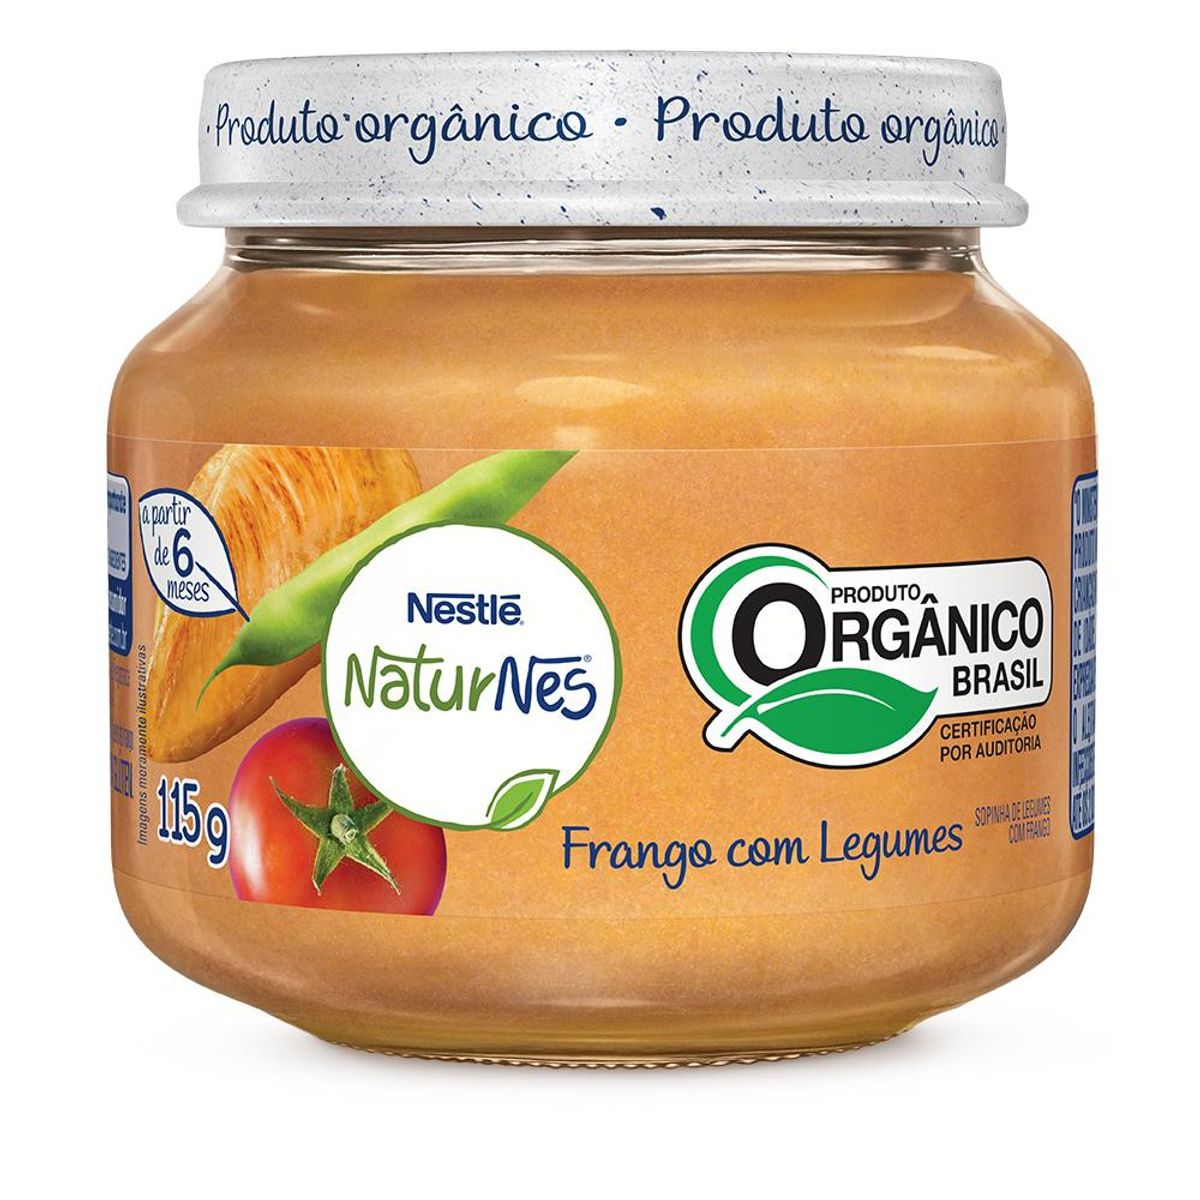 Papinha Orgânica Nestlé Naturnes Frango com Legumes 115g